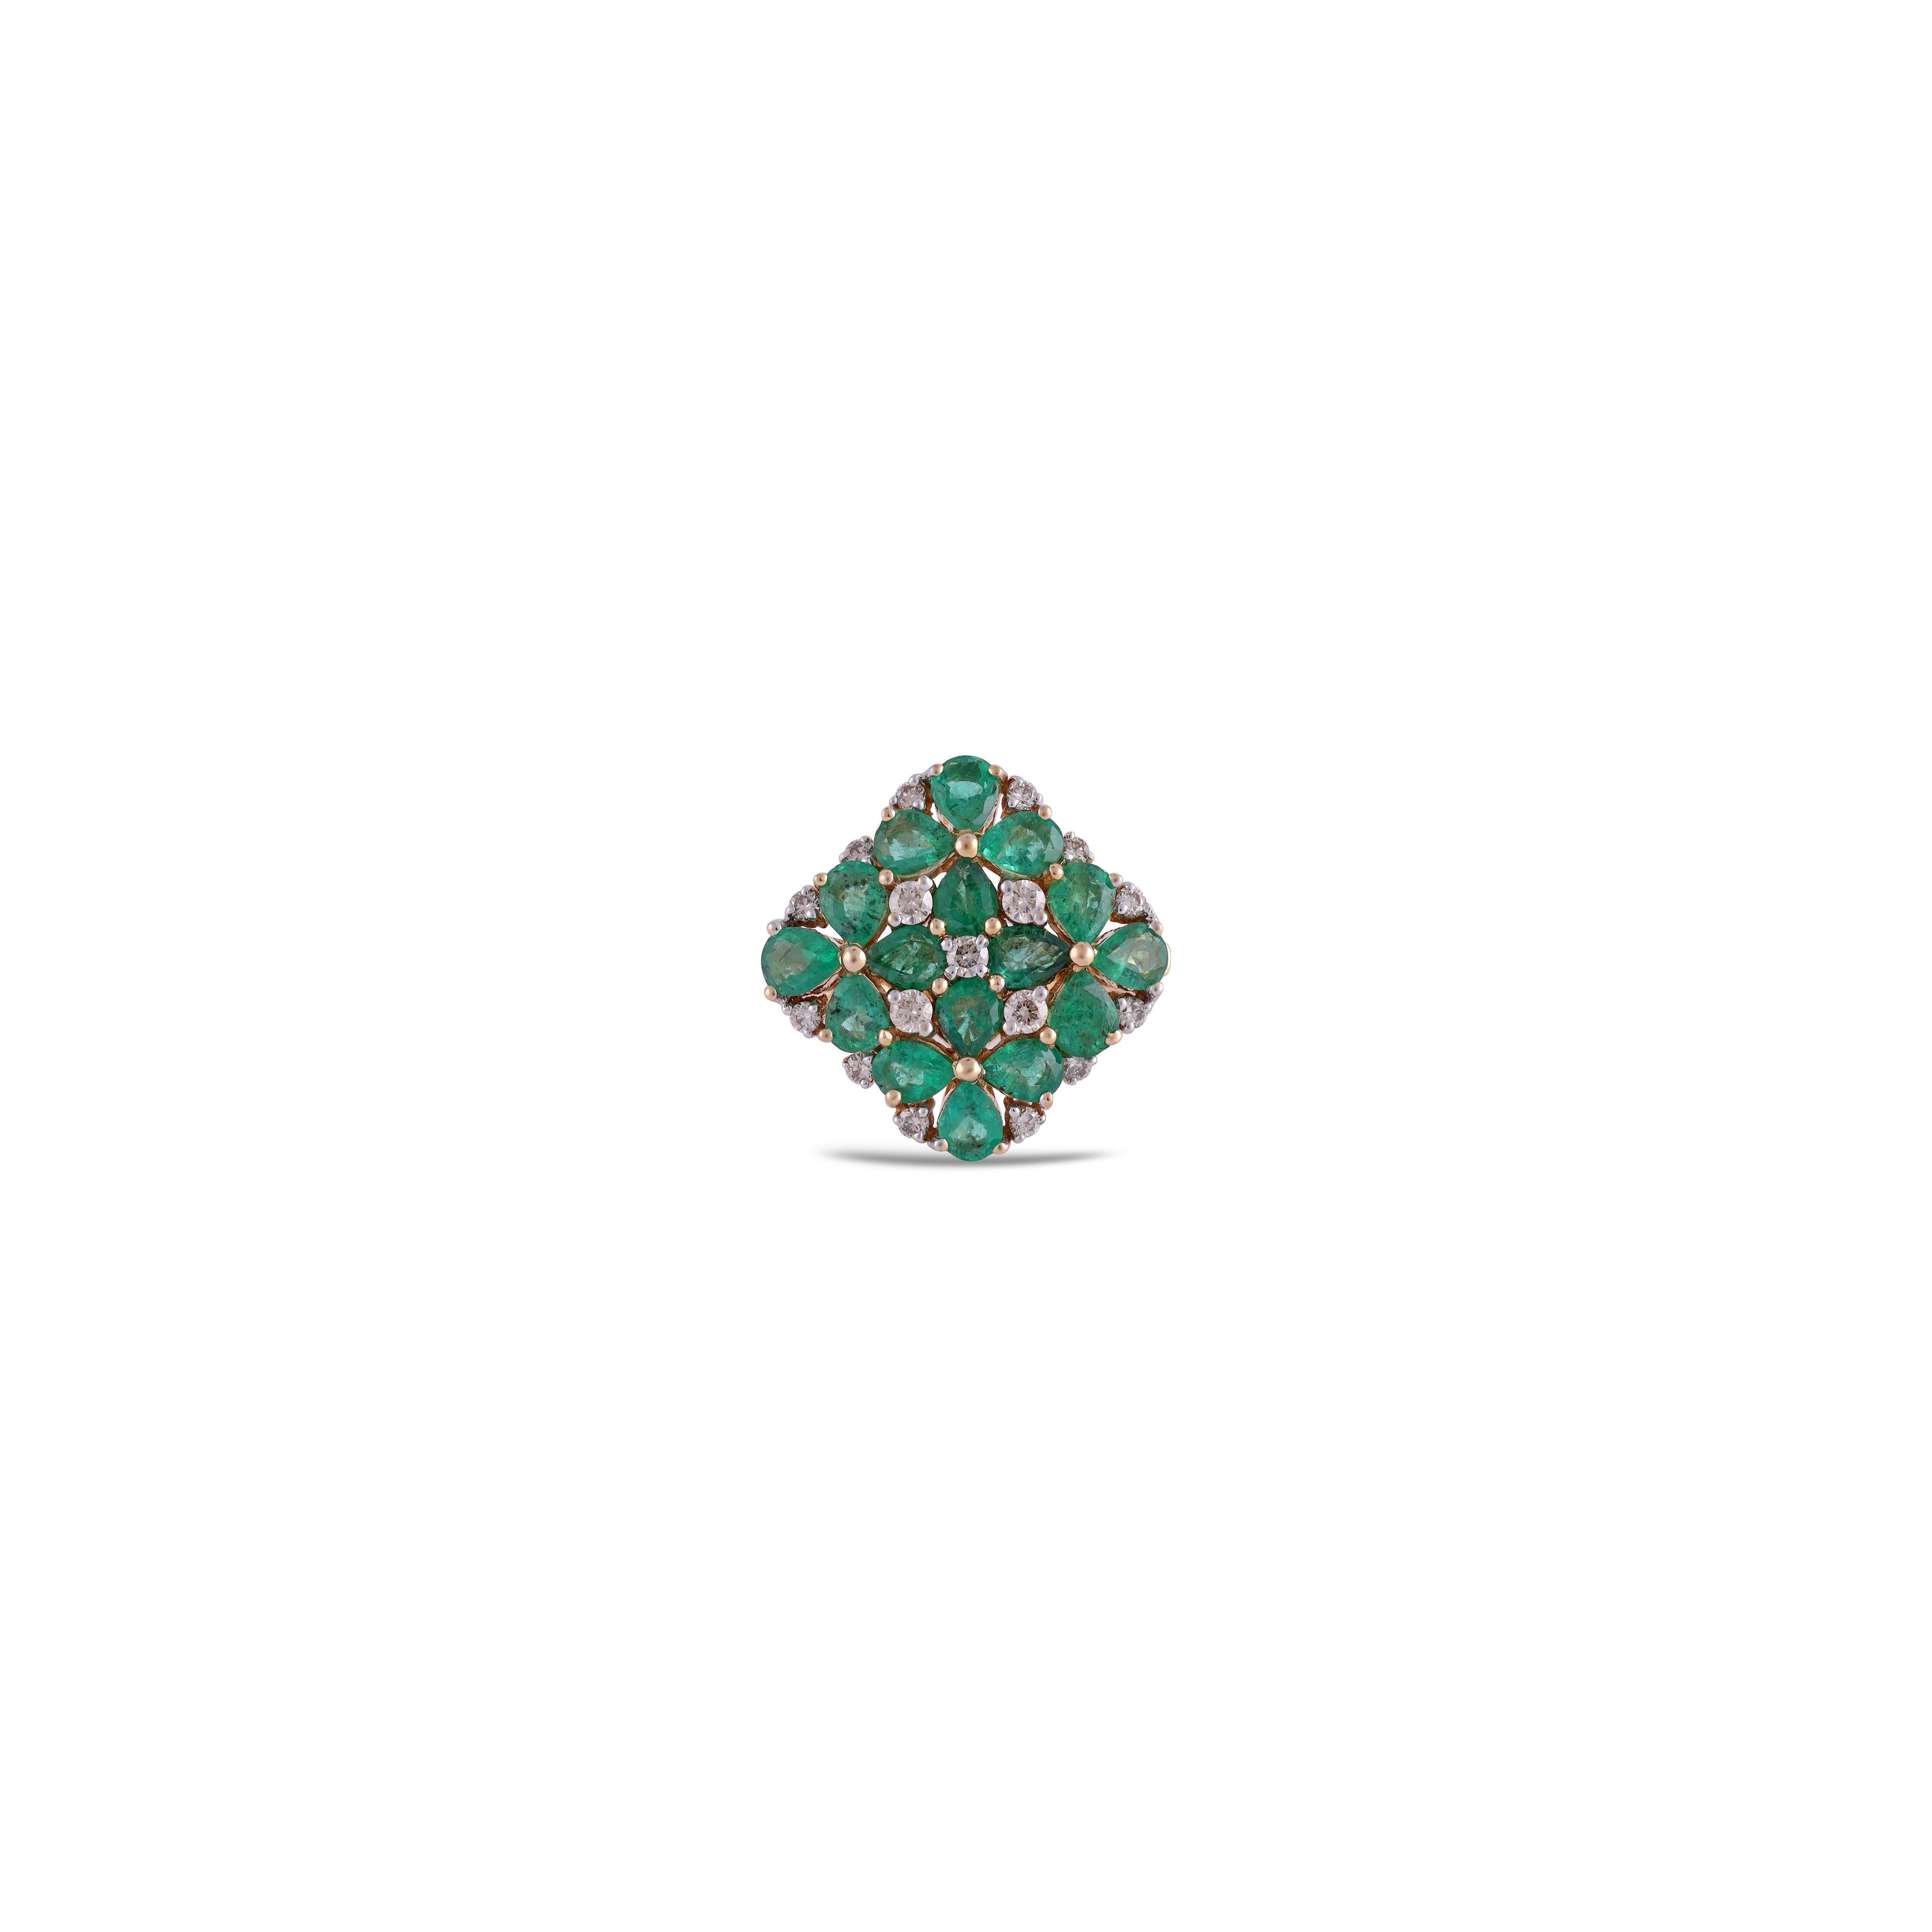 Dies ist ein eleganter Smaragd & Diamant-Ring in 18k Gold mit 16 Stück von  Smaragd mit einem Gewicht von 2,20 Karat, der von 17 runden Diamanten mit einem Gewicht von 0,29 Karat umgeben ist. Der gesamte Ring ist in 18 Karat gehalten.  Gold 

 Die